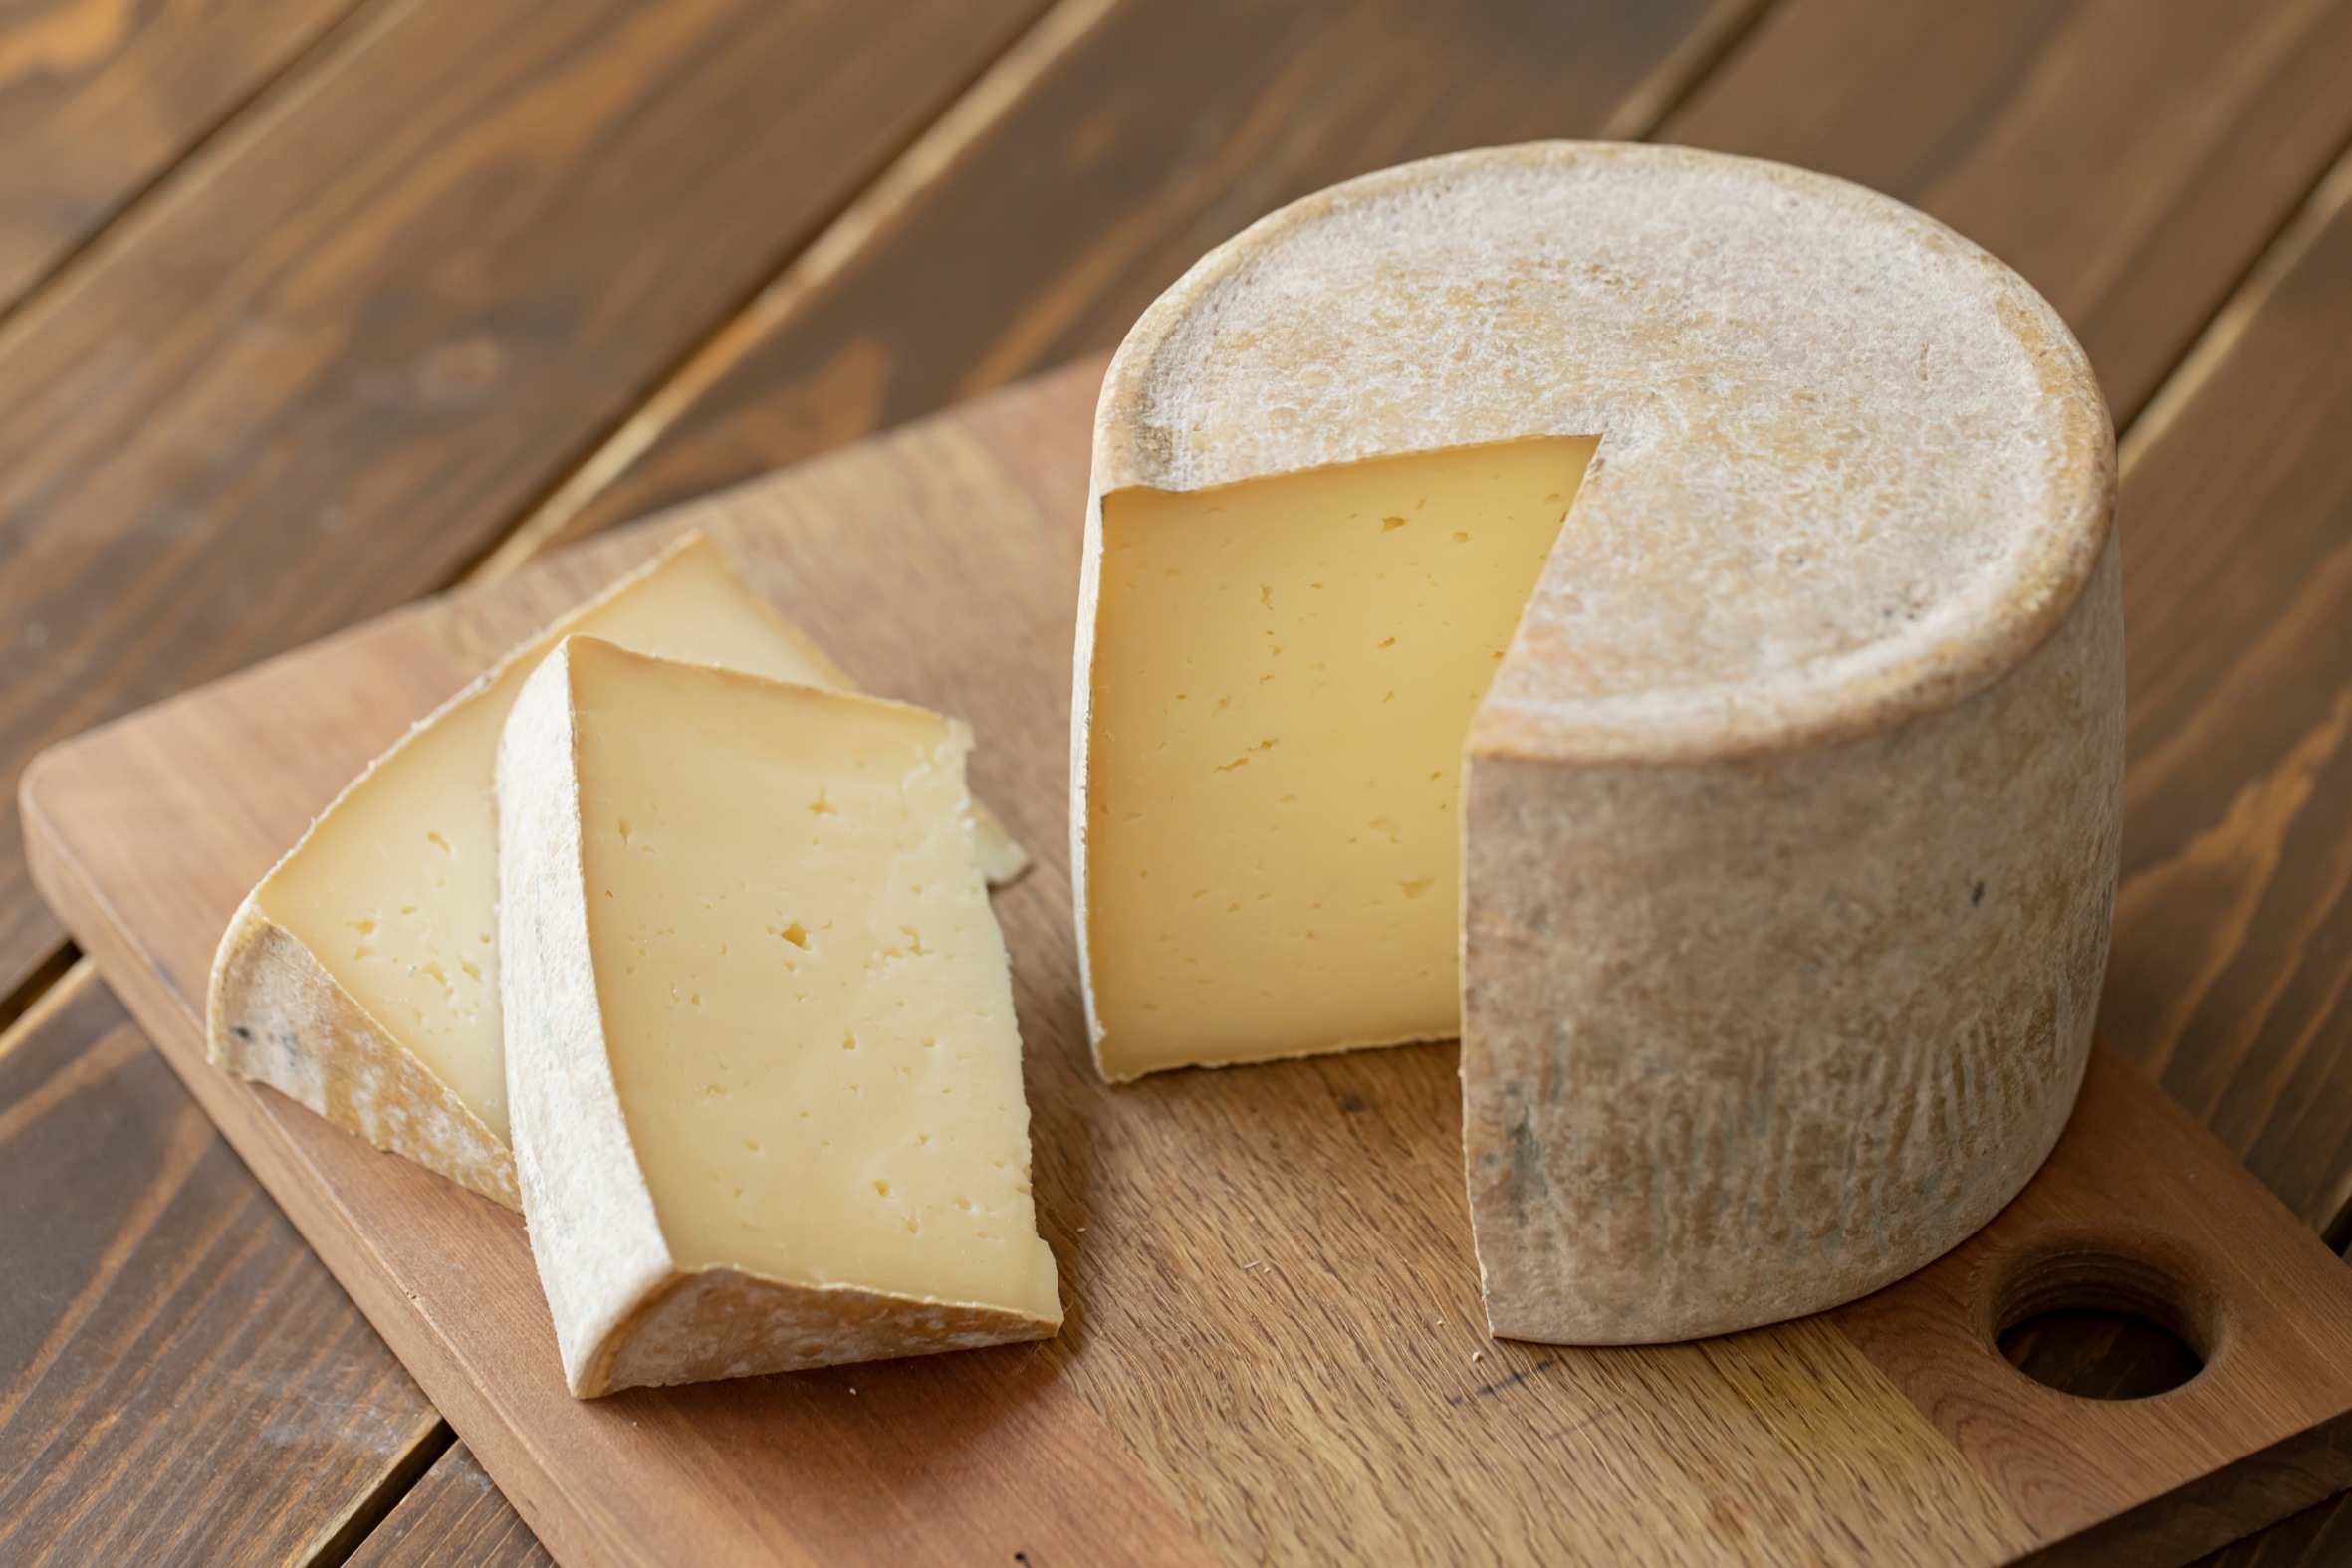 Asukaのチーズ工房 むかわ町 はじめのチーズ ホール1kg 加工品 23 北海道つながるマーケット